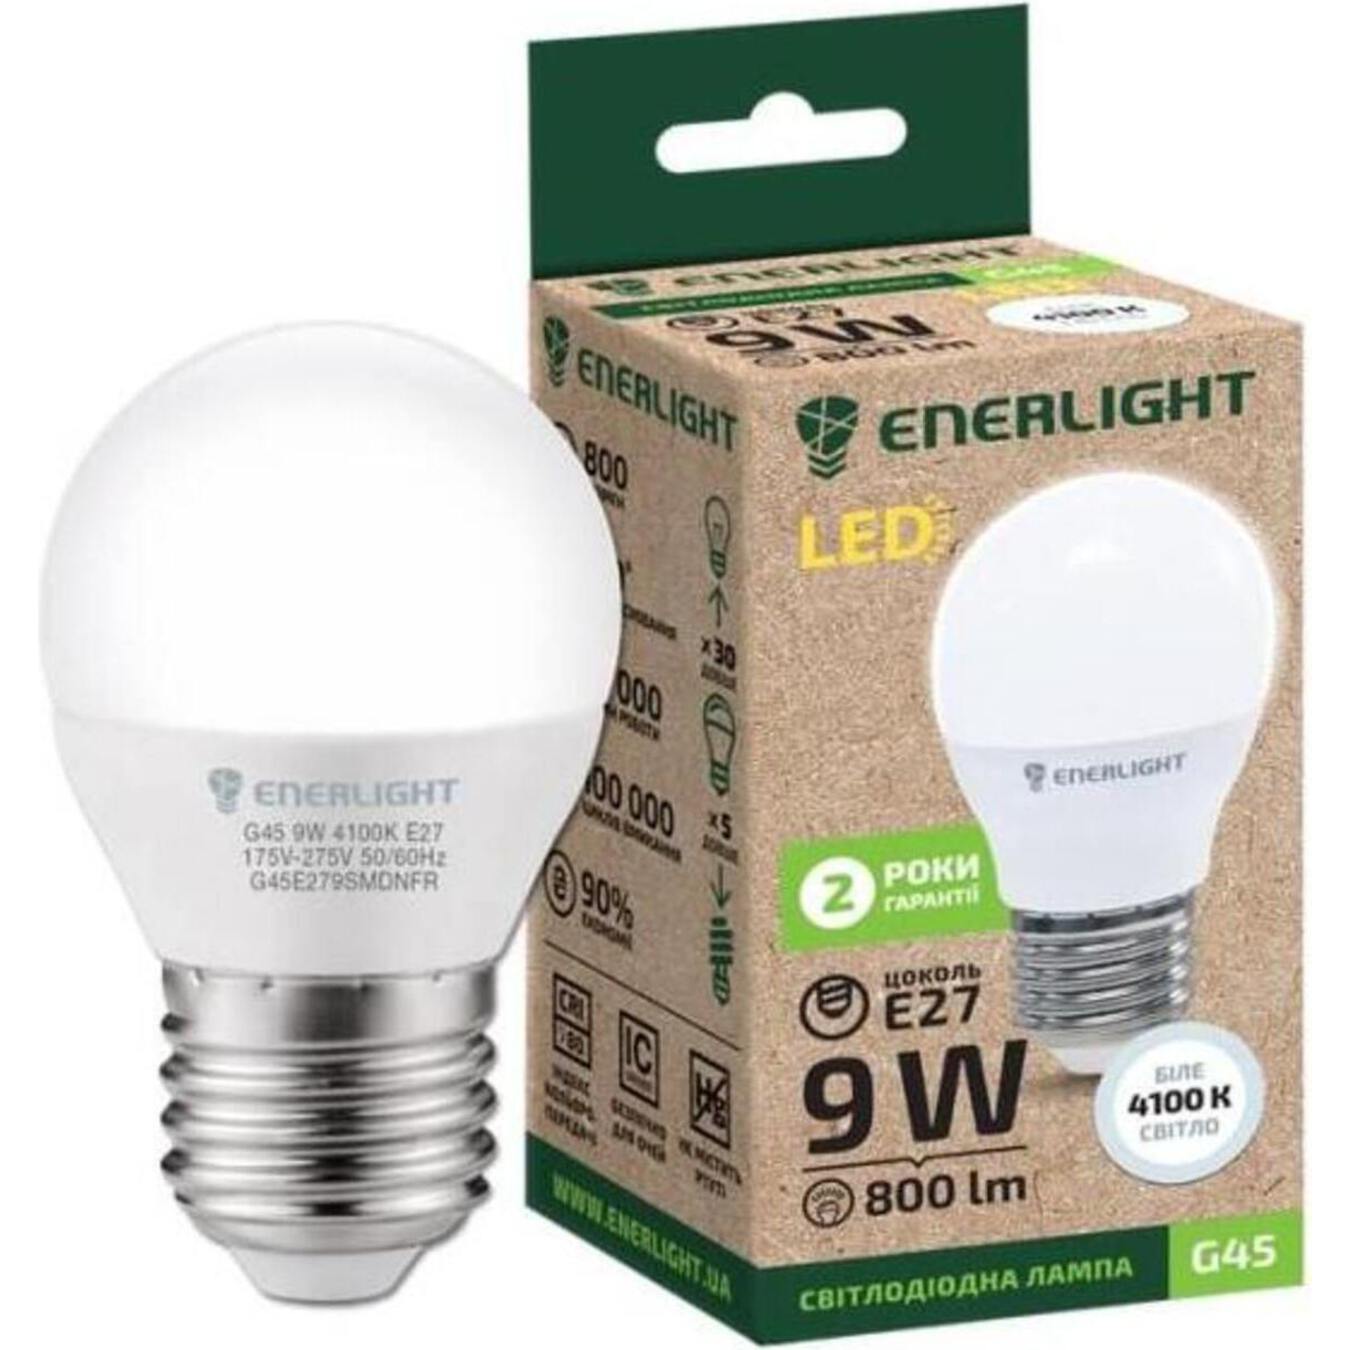 LED lamp ENERLIGHT G45 9W 4100K E27